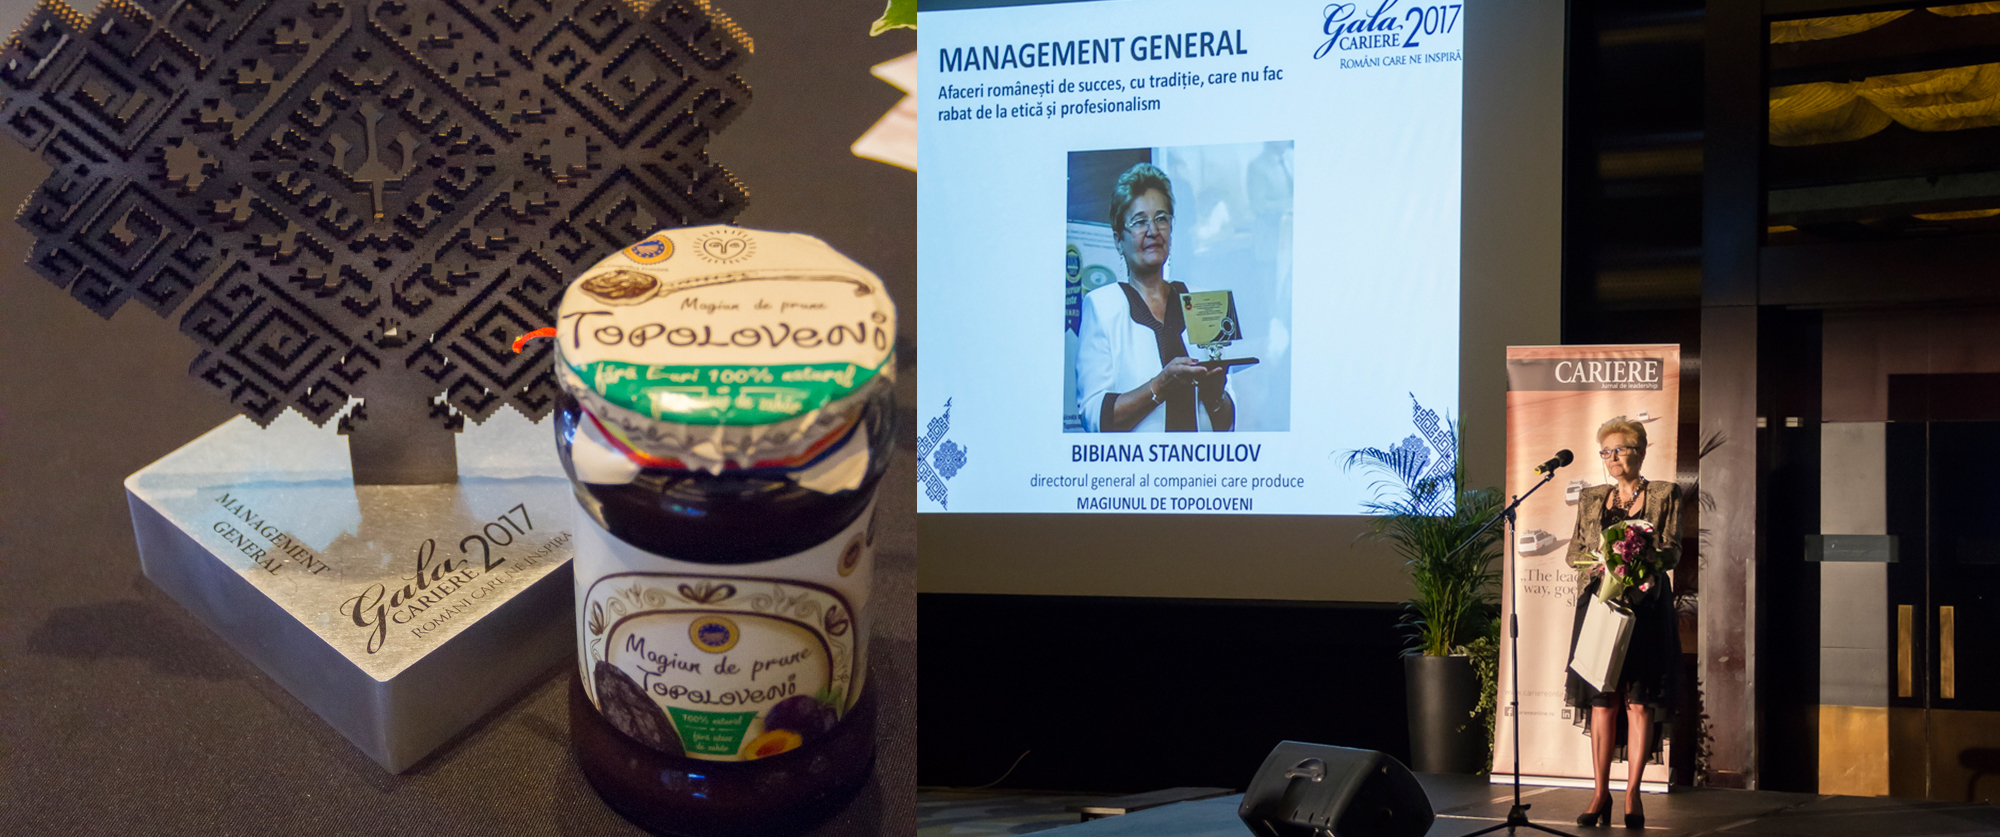 Bibiana Stanciulov a câștigat premiul pentru “Management general” la Gala Cariere